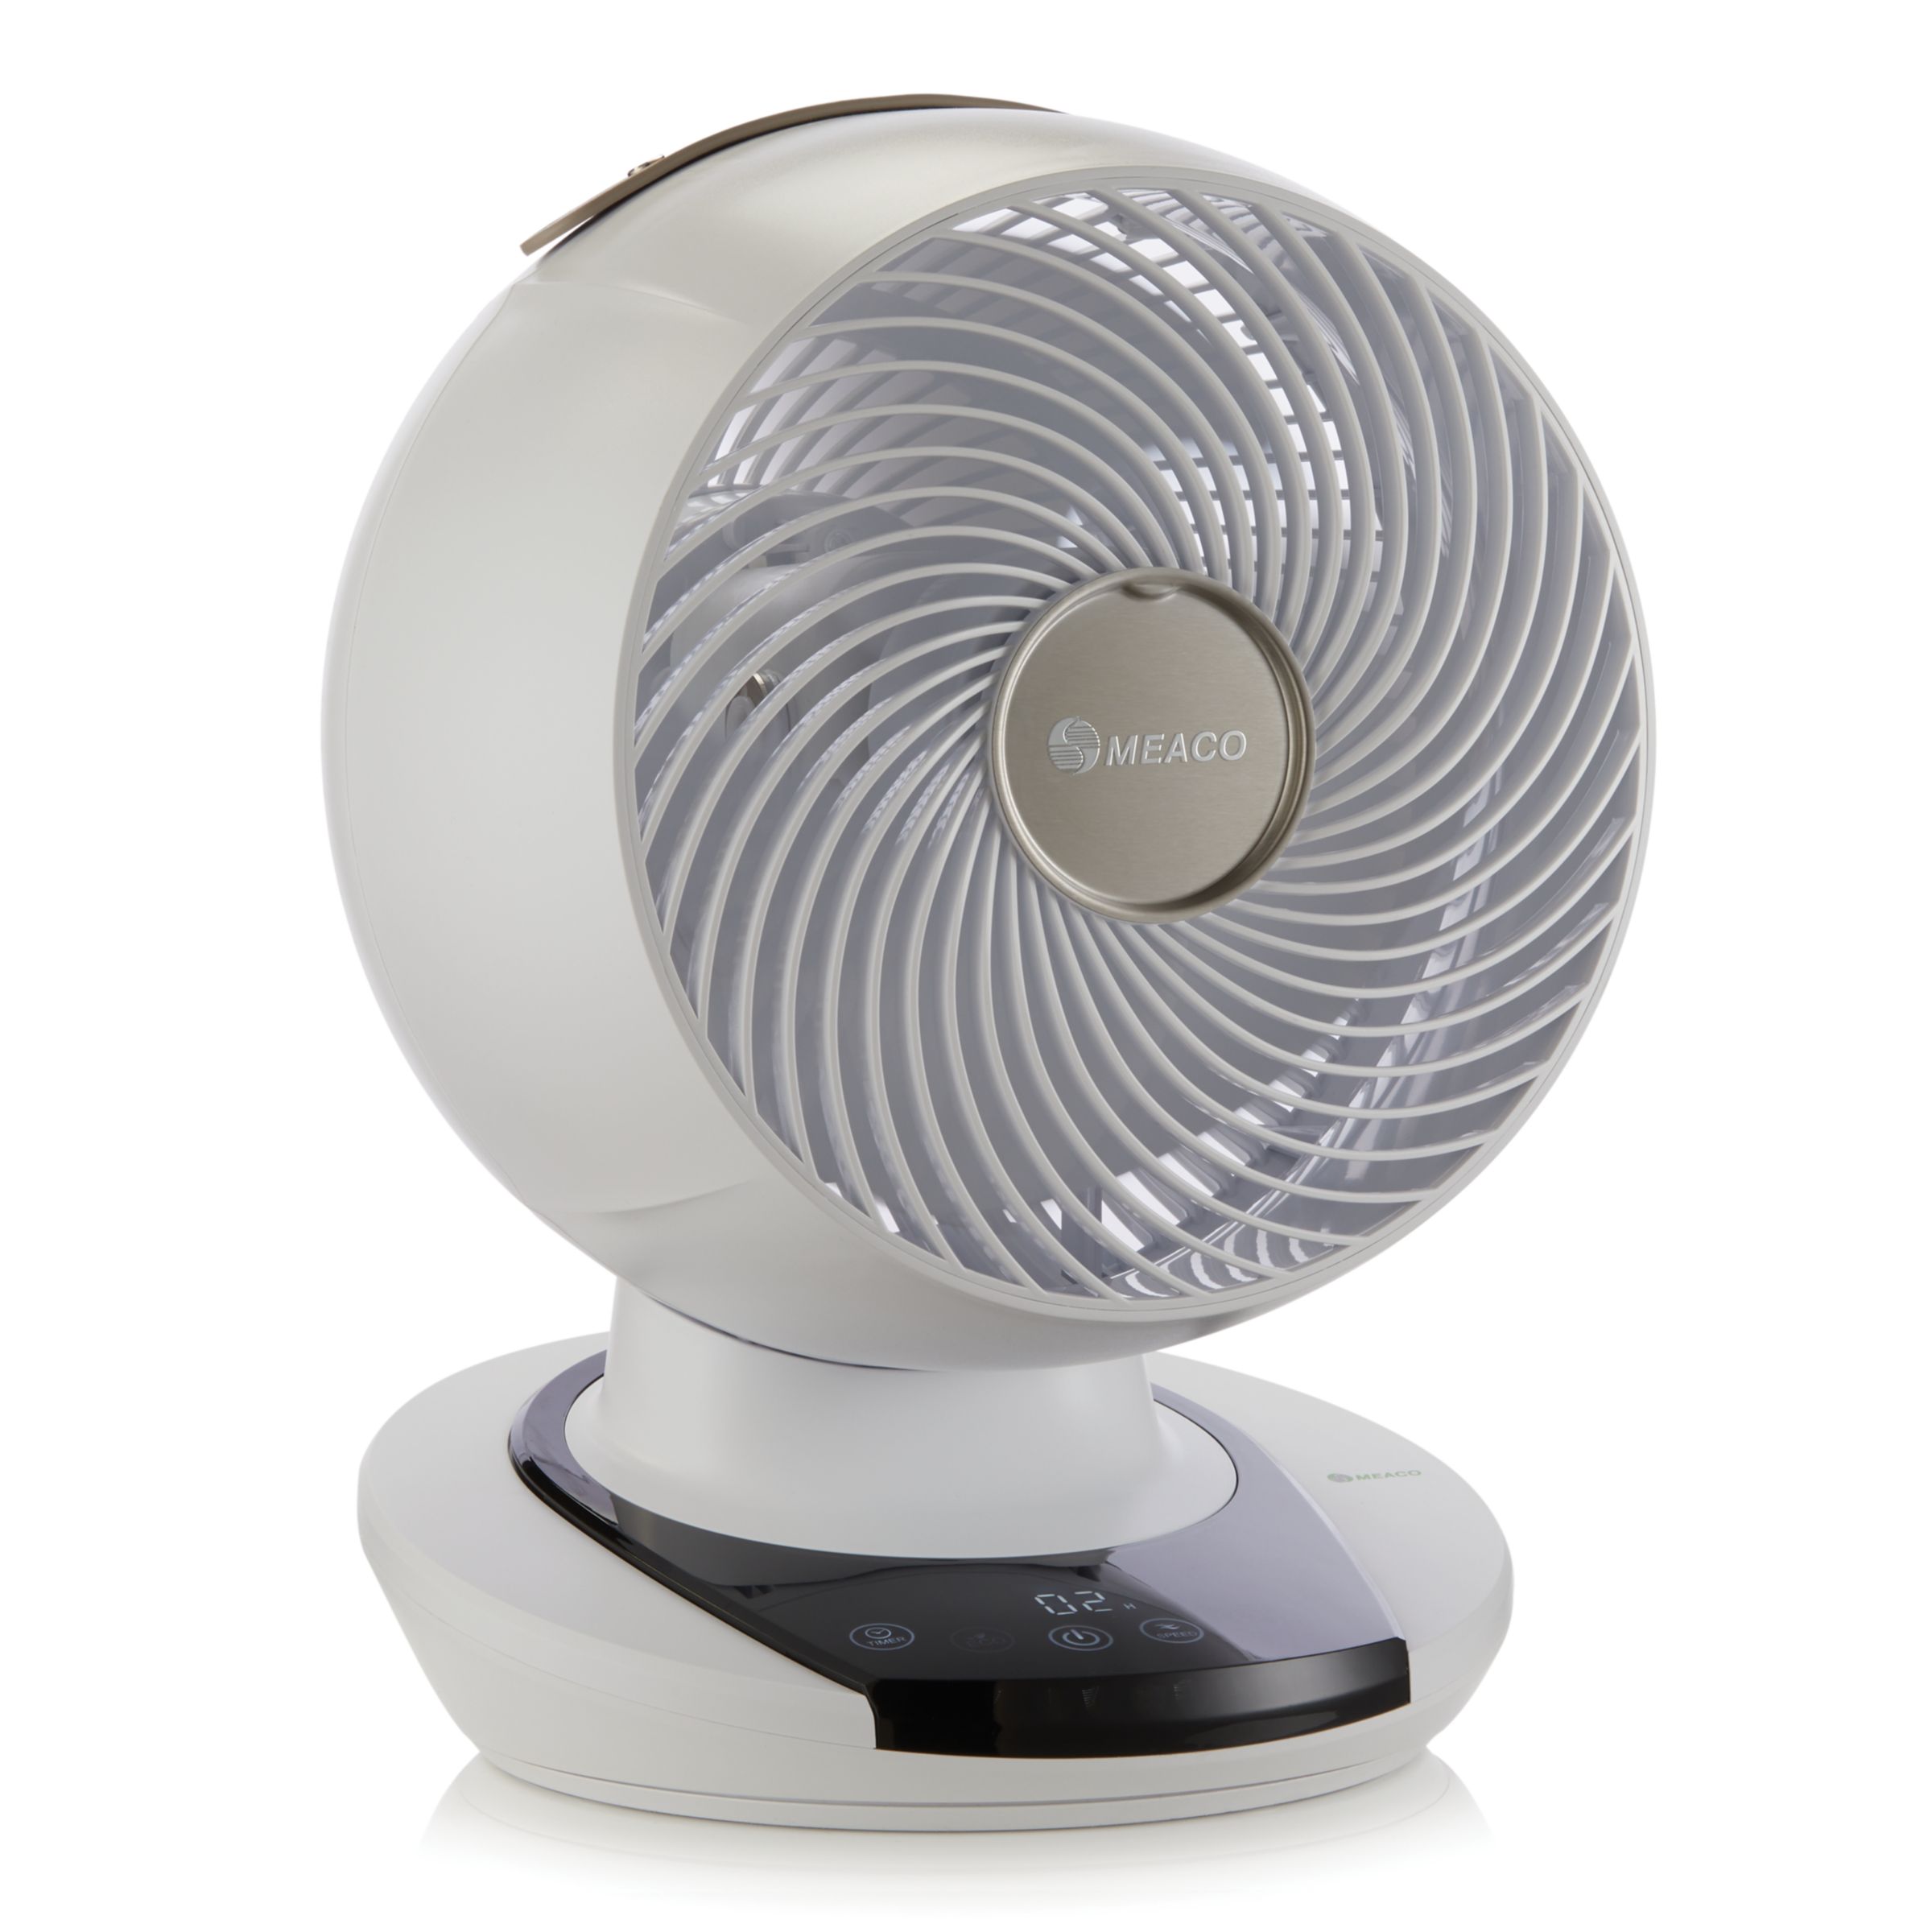 Meacofan 1056 Air Circulator Cooling Fan Bedroom Fan Desk